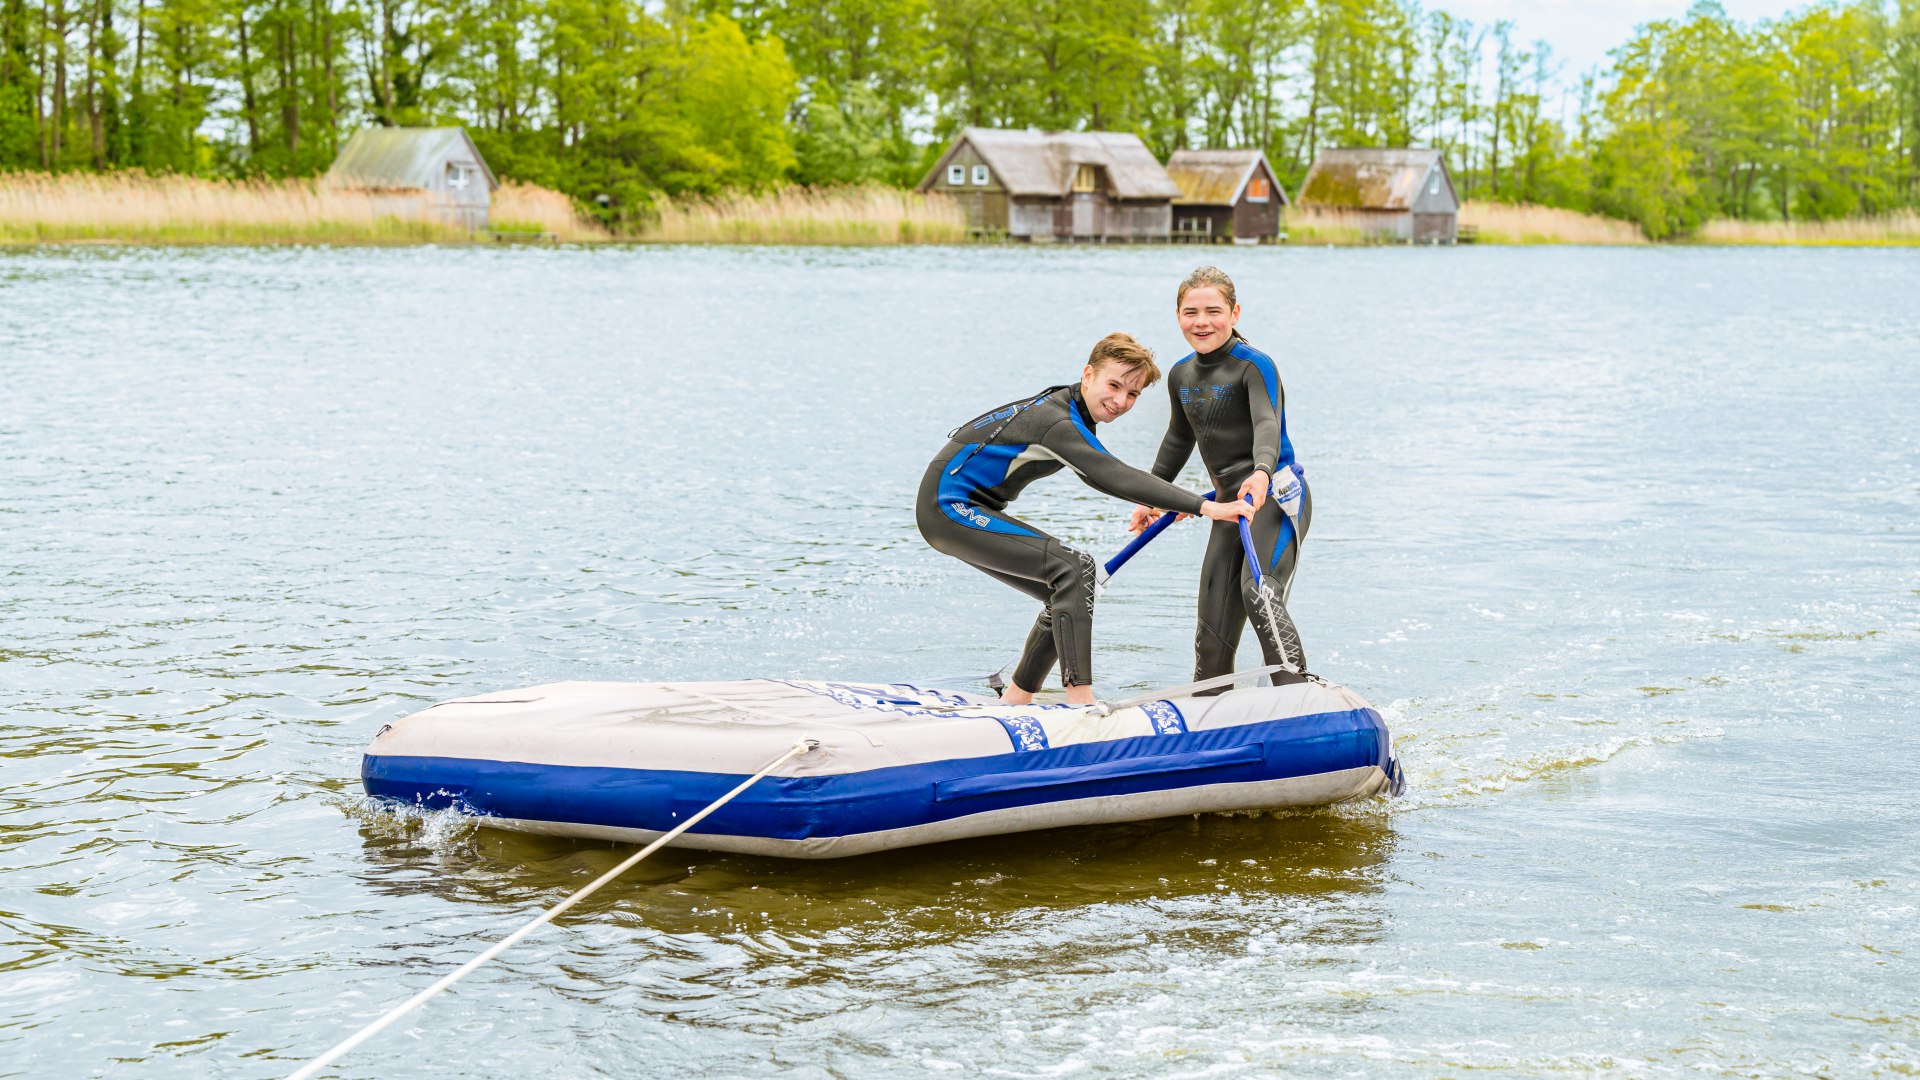 Auf der Badeinsel lassen sich Ferri und Theo über den See ziehen. Wer schafft es, länger stehen zu bleiben? , © TMV/Tiemann